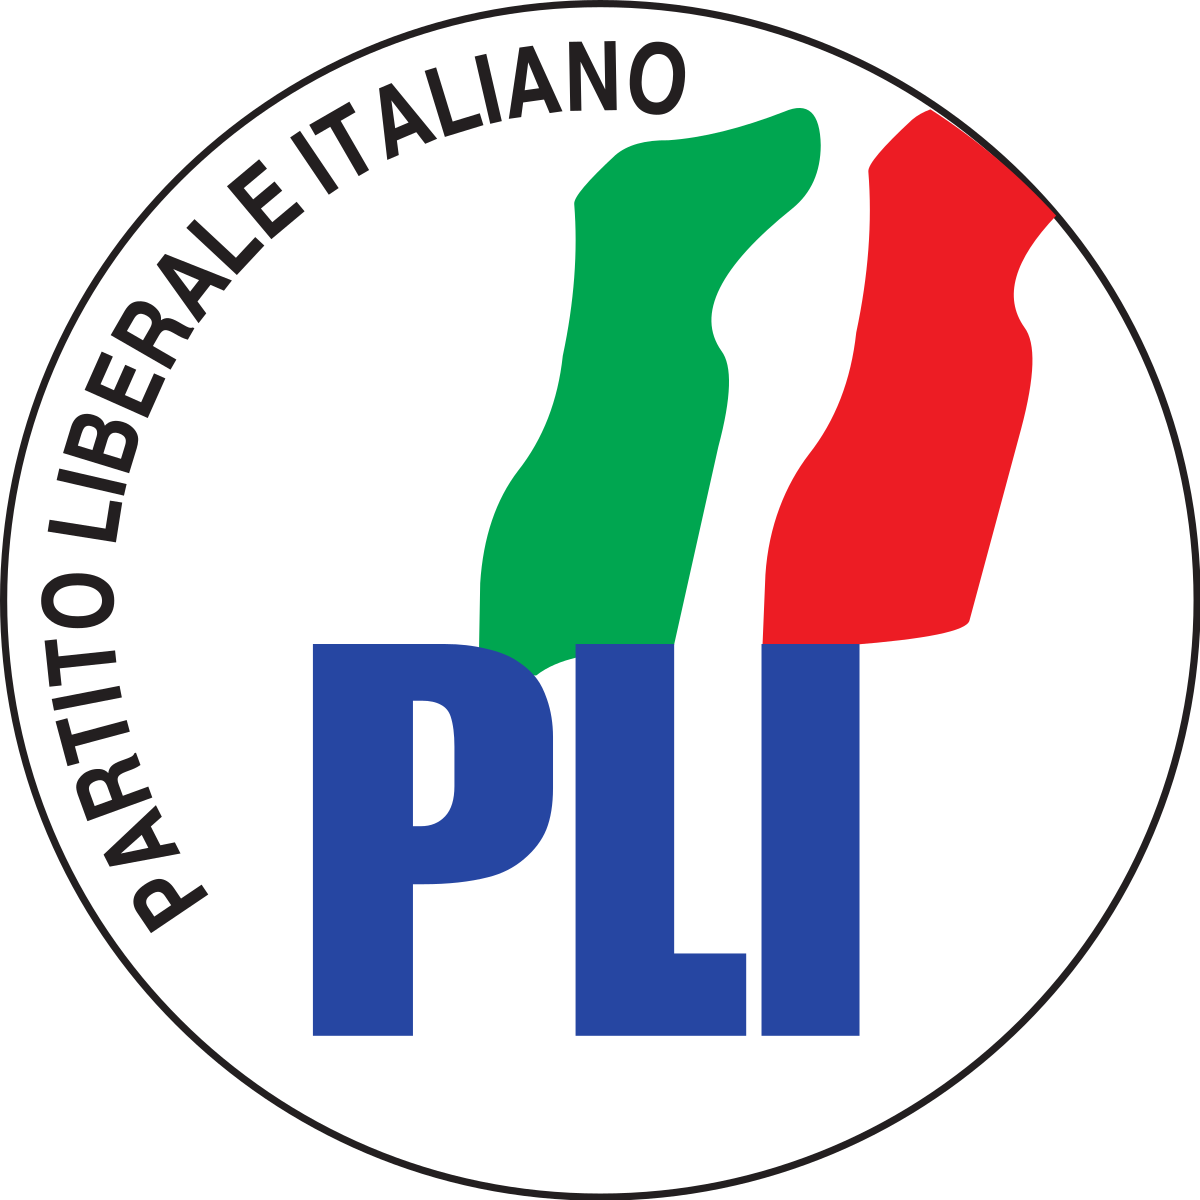 Partito Liberale Italiano